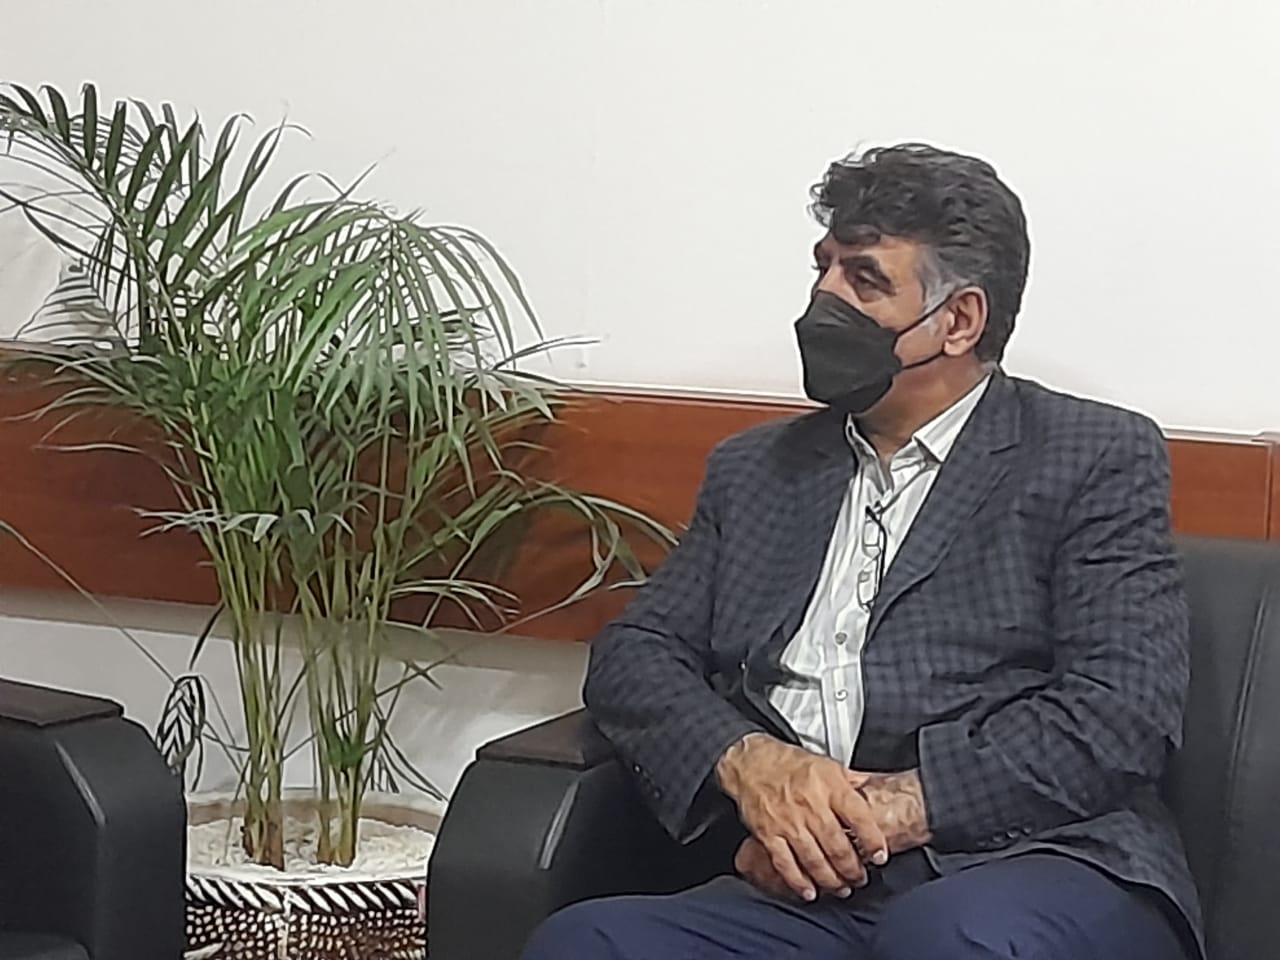 مدیرعامل شرکت همیاران شمال شرق با مدیرکل پشتیبانی شهرداری مشهد دیدار کرد.